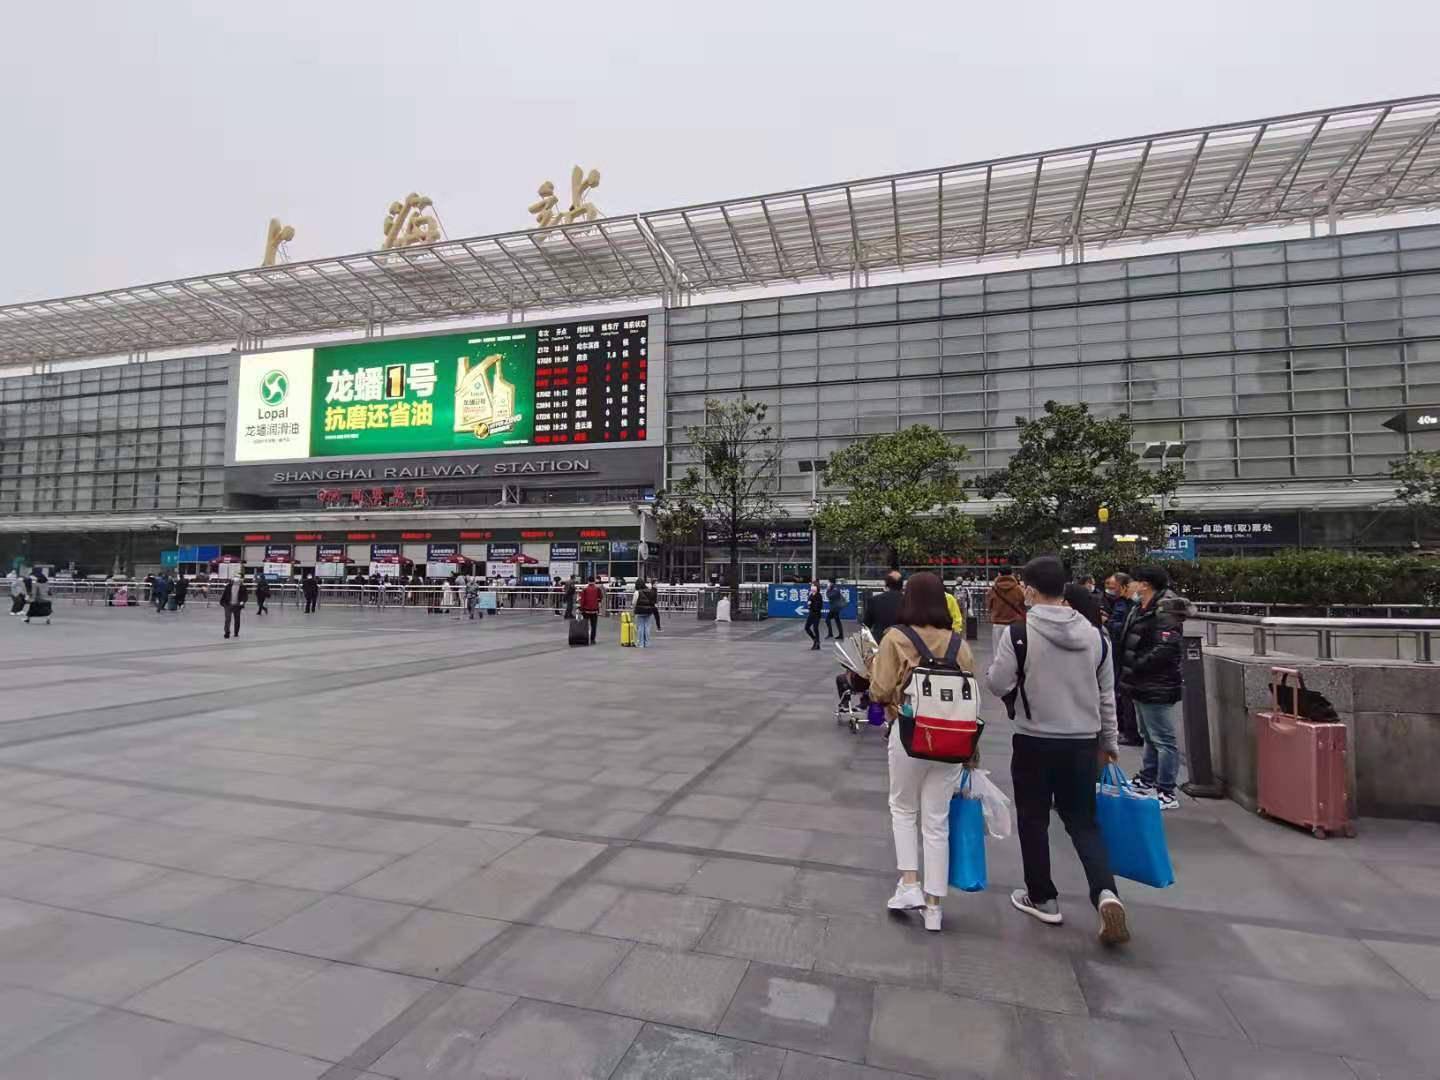 铁路上海站清明运输启动,预计发送旅客150万人次